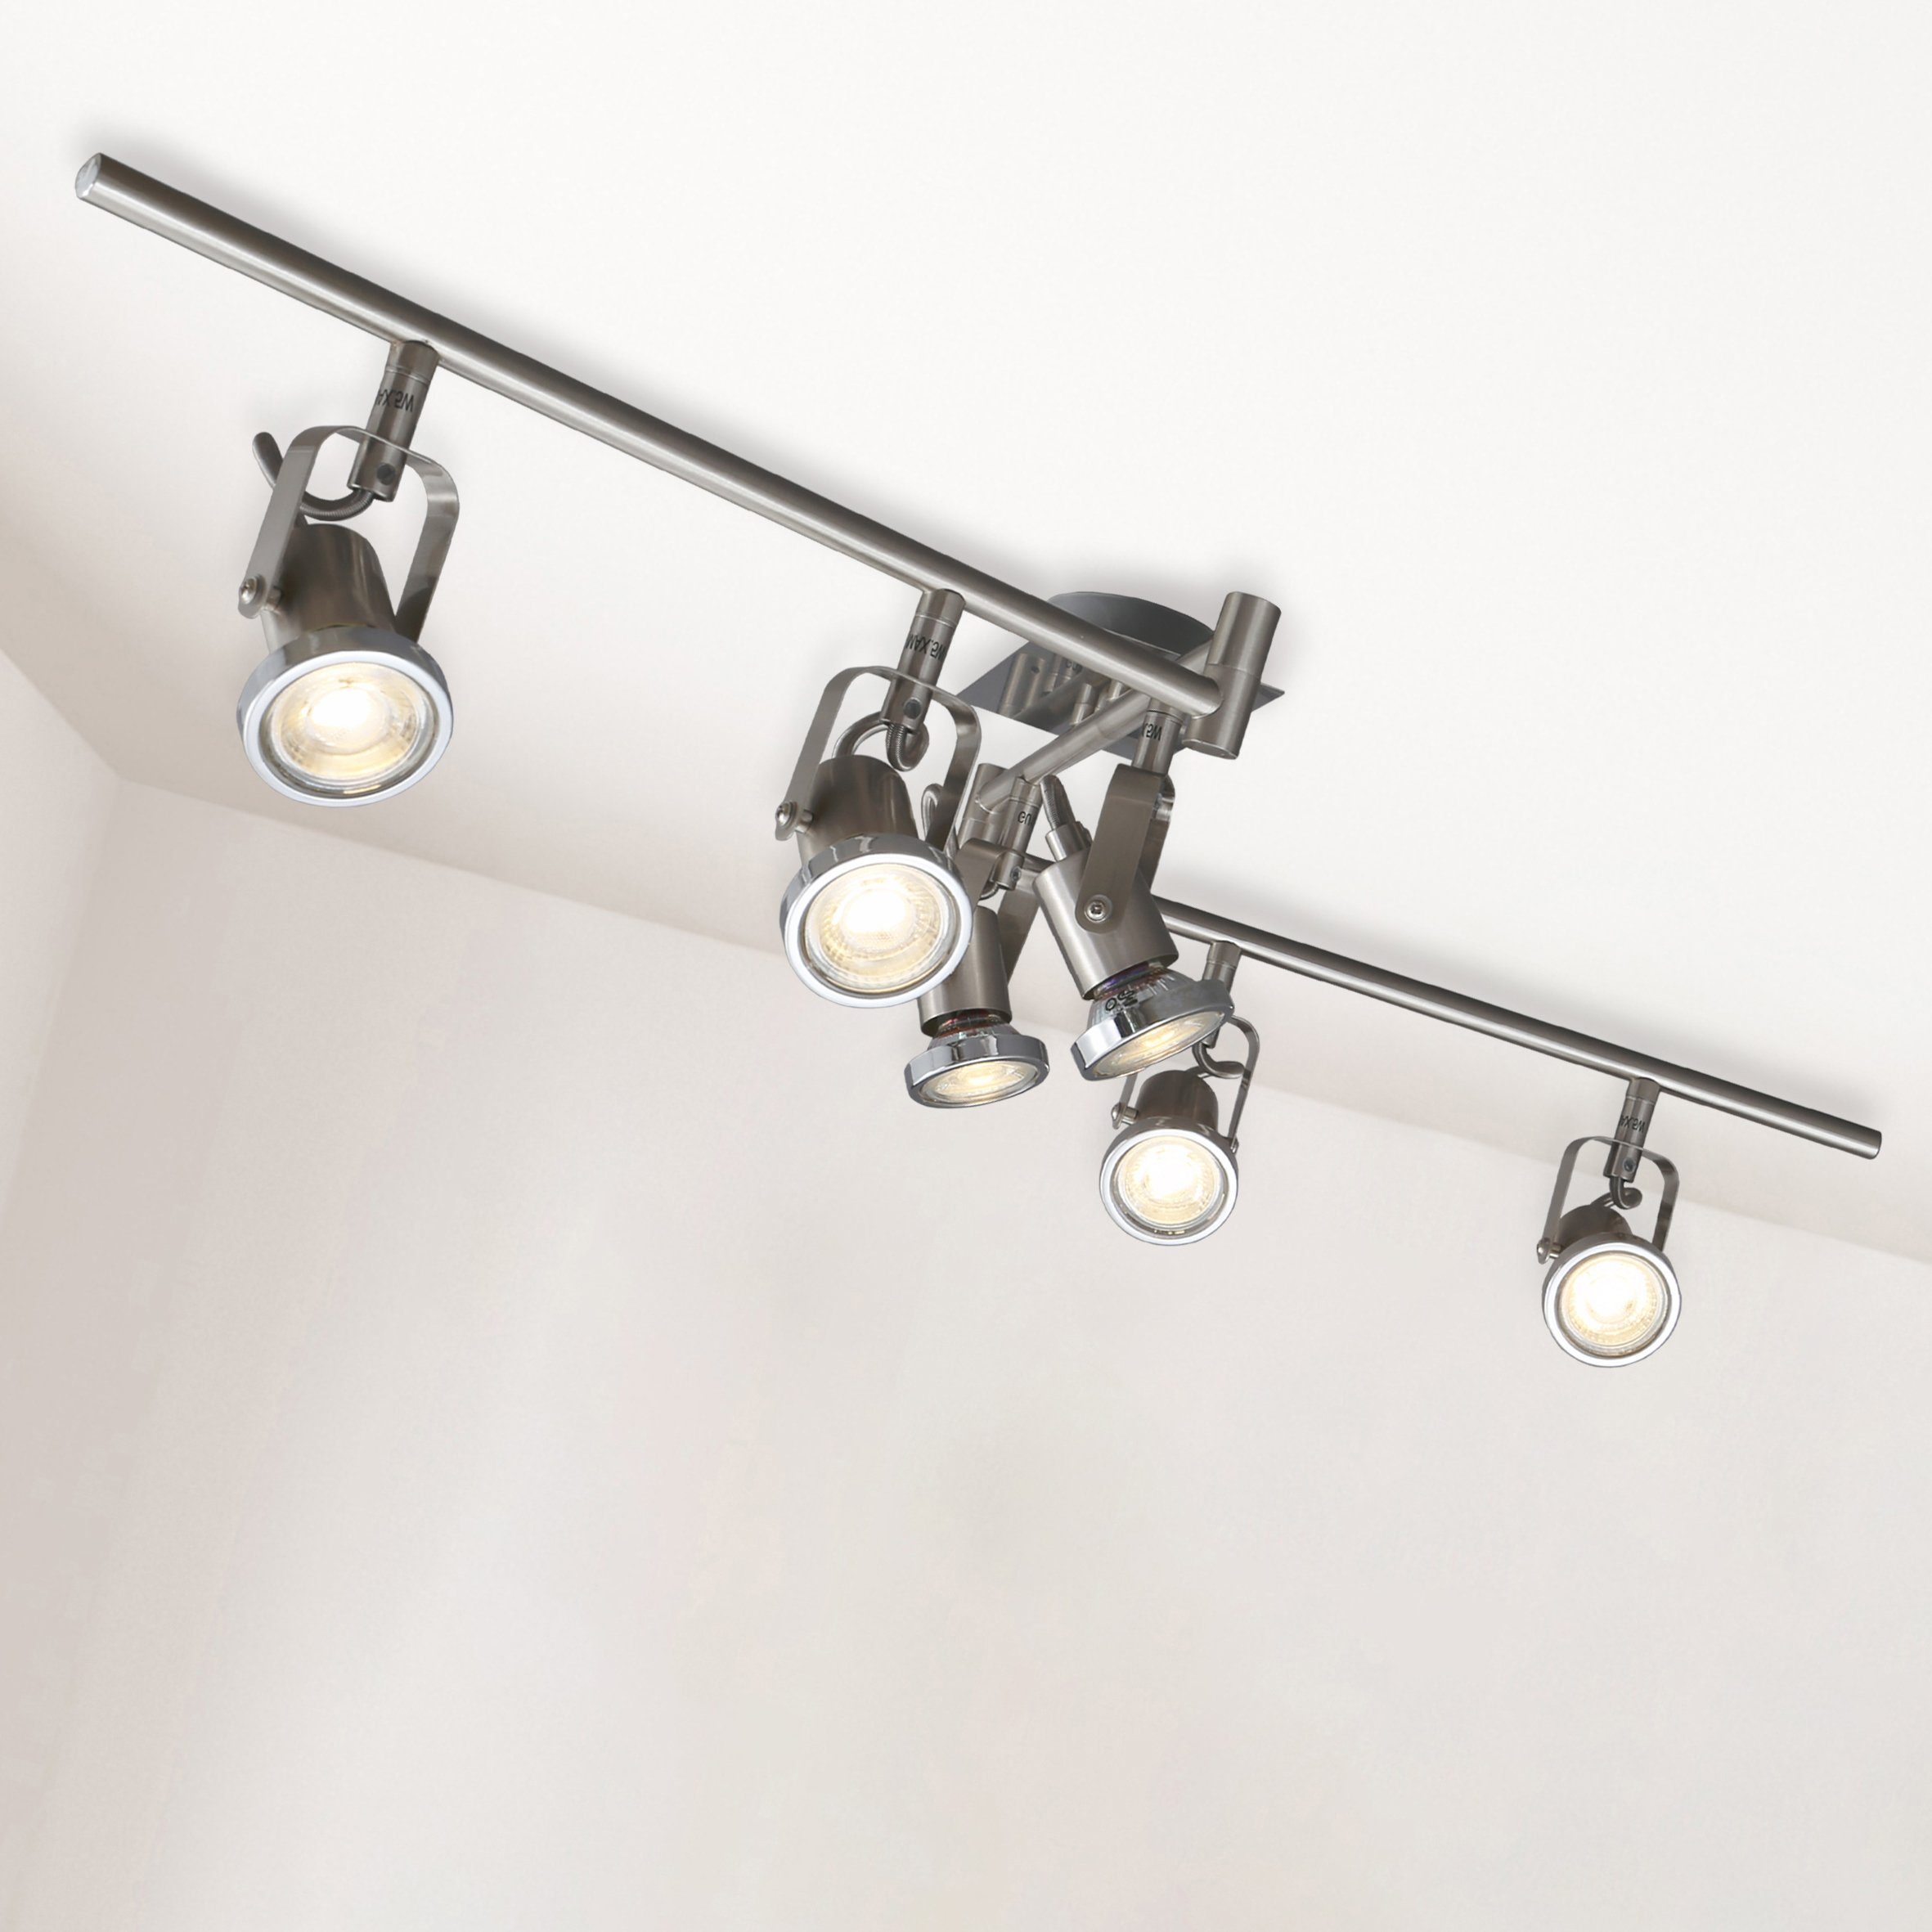 LED Decken-Lampe Flur Spiegel Spot Leuchte DESIGN Esszimmer Decken-Strahler WOFI 